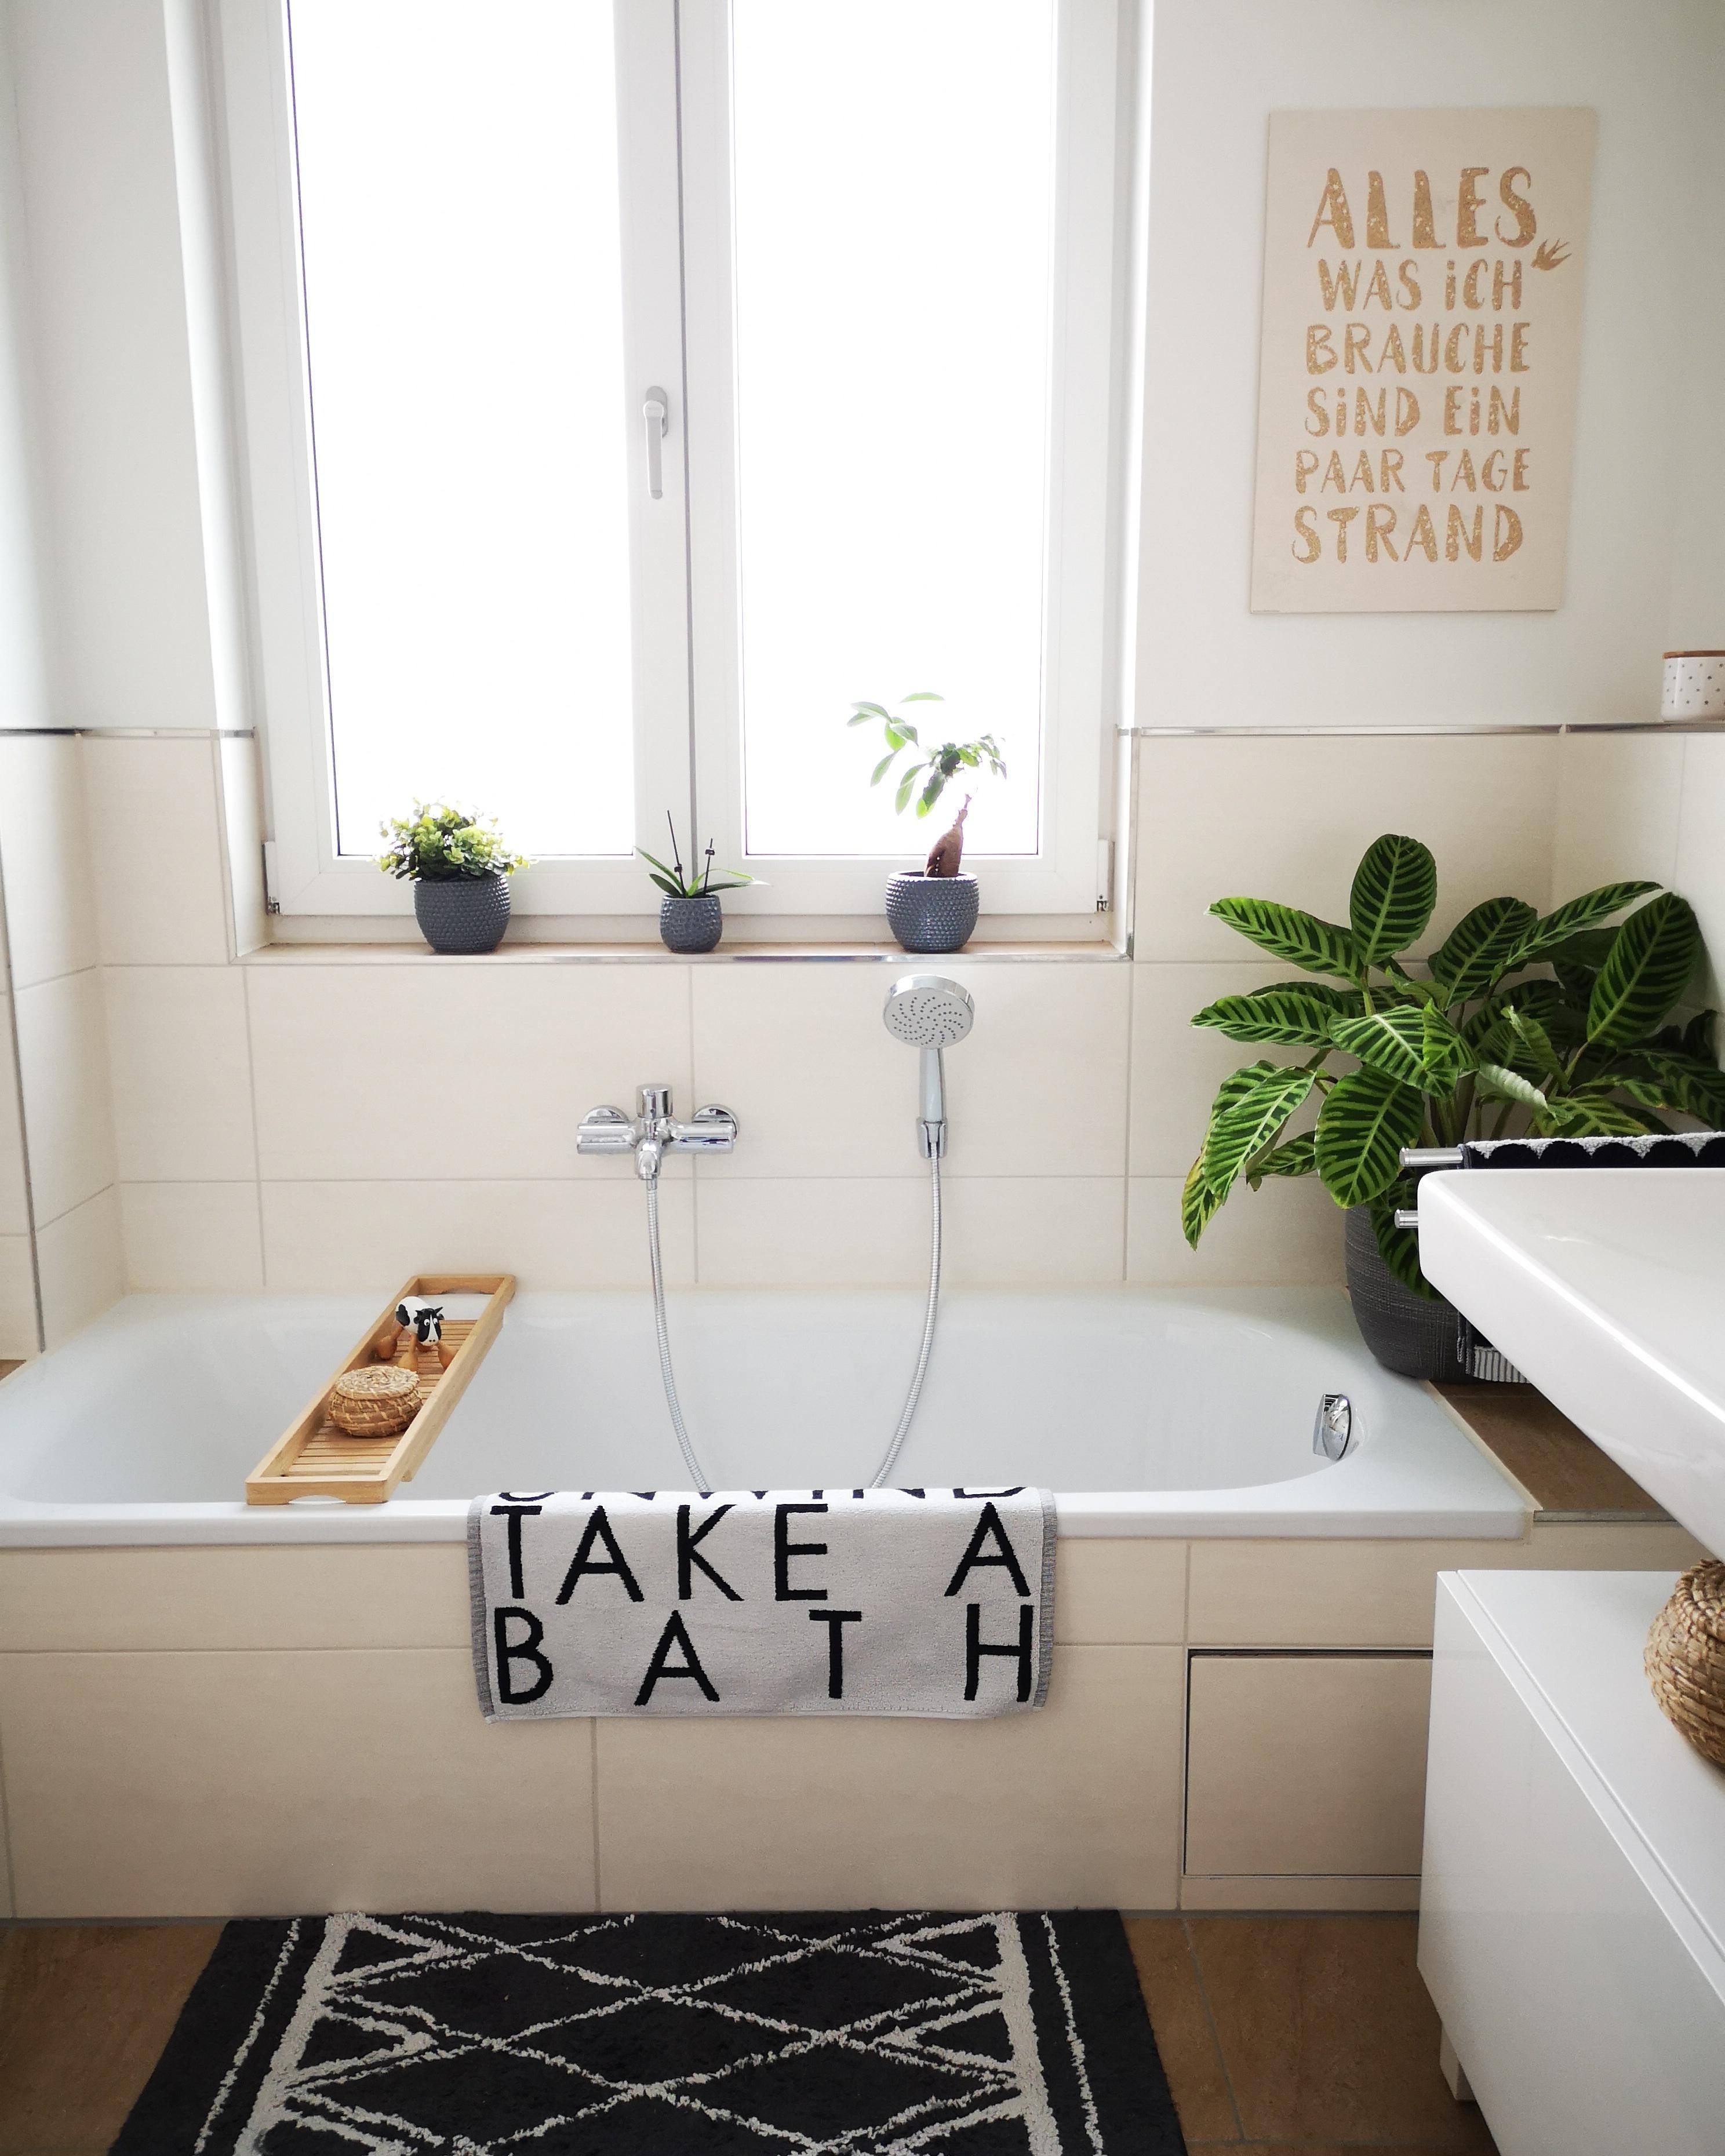 Auch das Badezimmer wurde im skandinavischen Stil eingerichtet 😊
#bathroominspo 